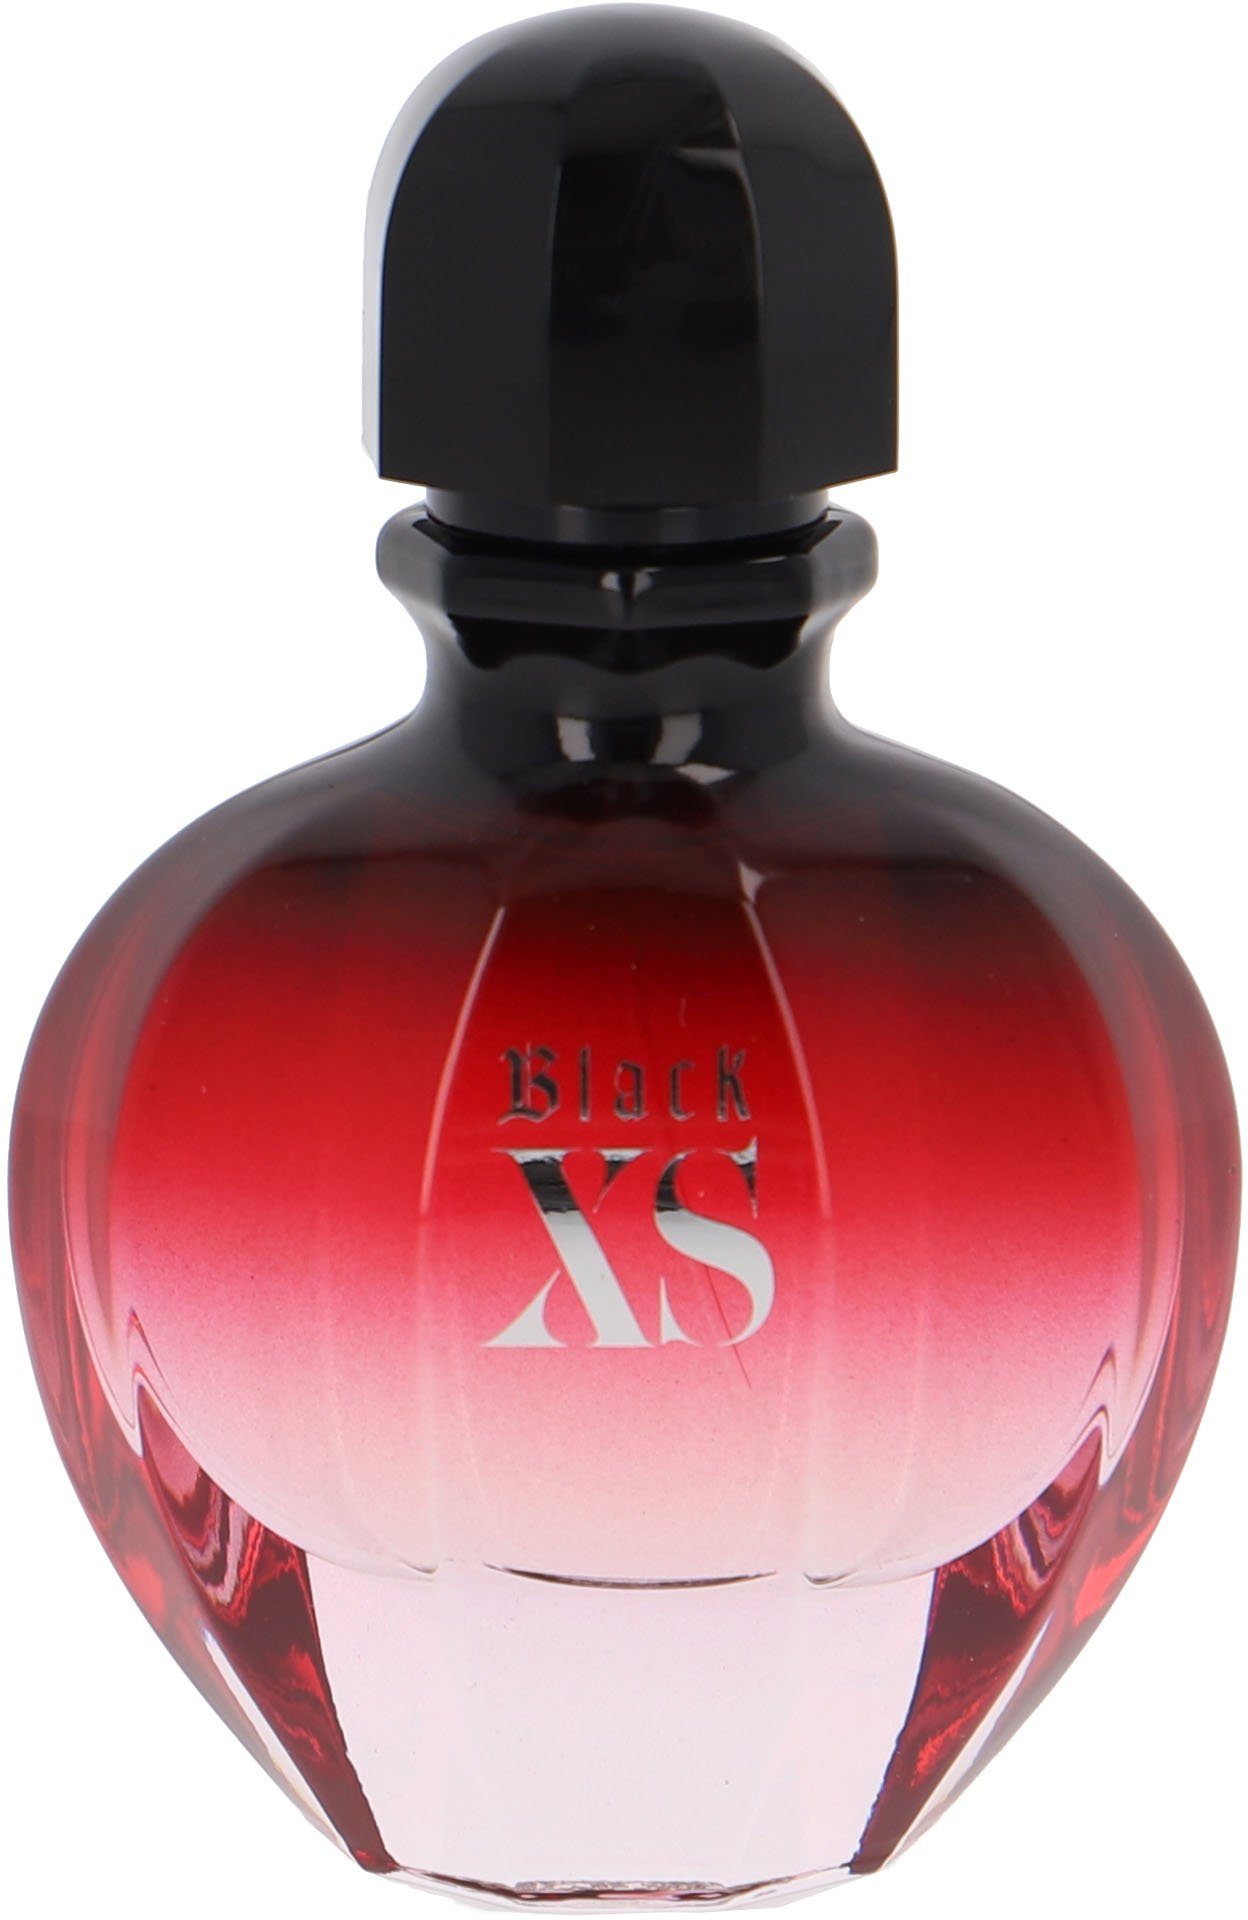 Super meistverkaufte Produkte paco rabanne Eau Black Elle Parfum de XS